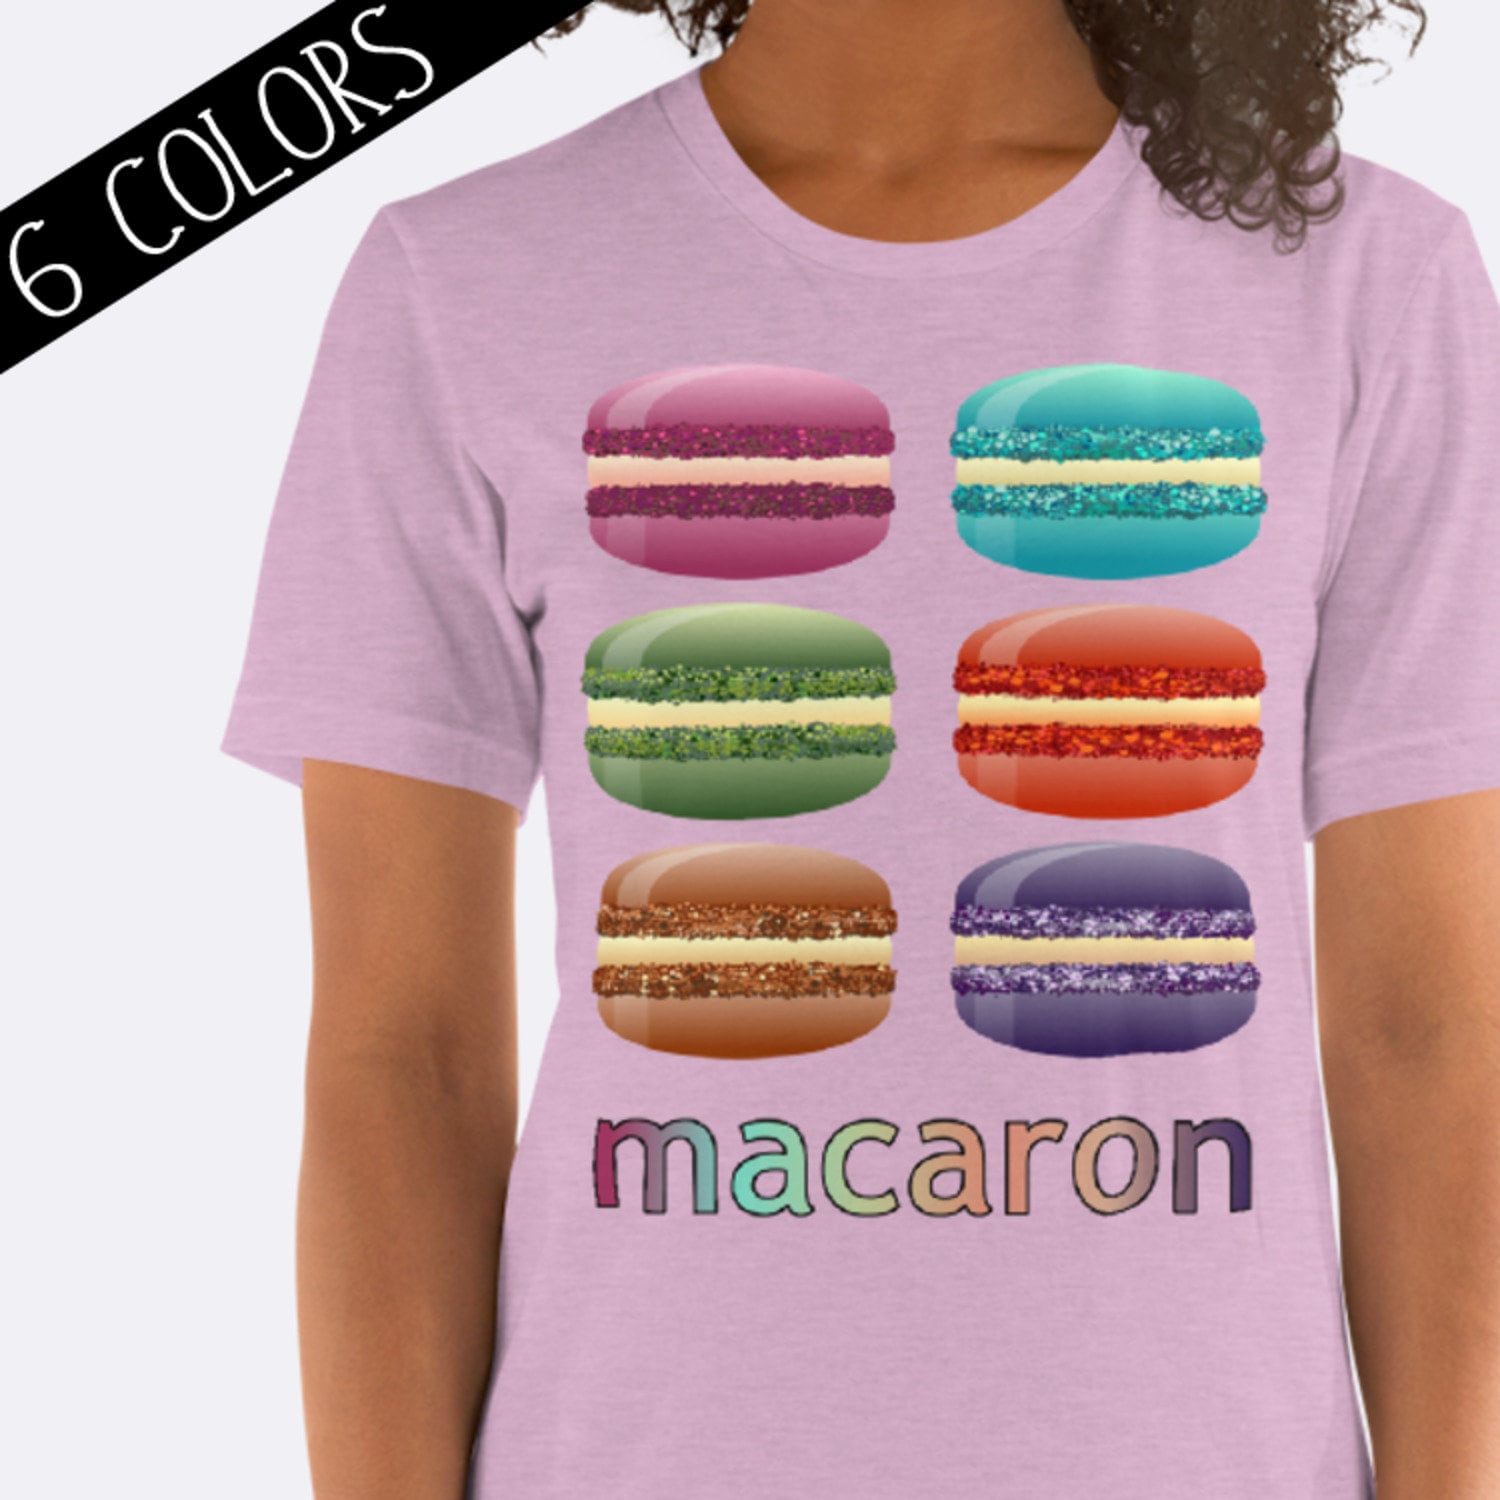 Macaroon Lovers Tee Macaroon Design Tee TShirt with Macaroons Macaroons TShirt Unisex Tee